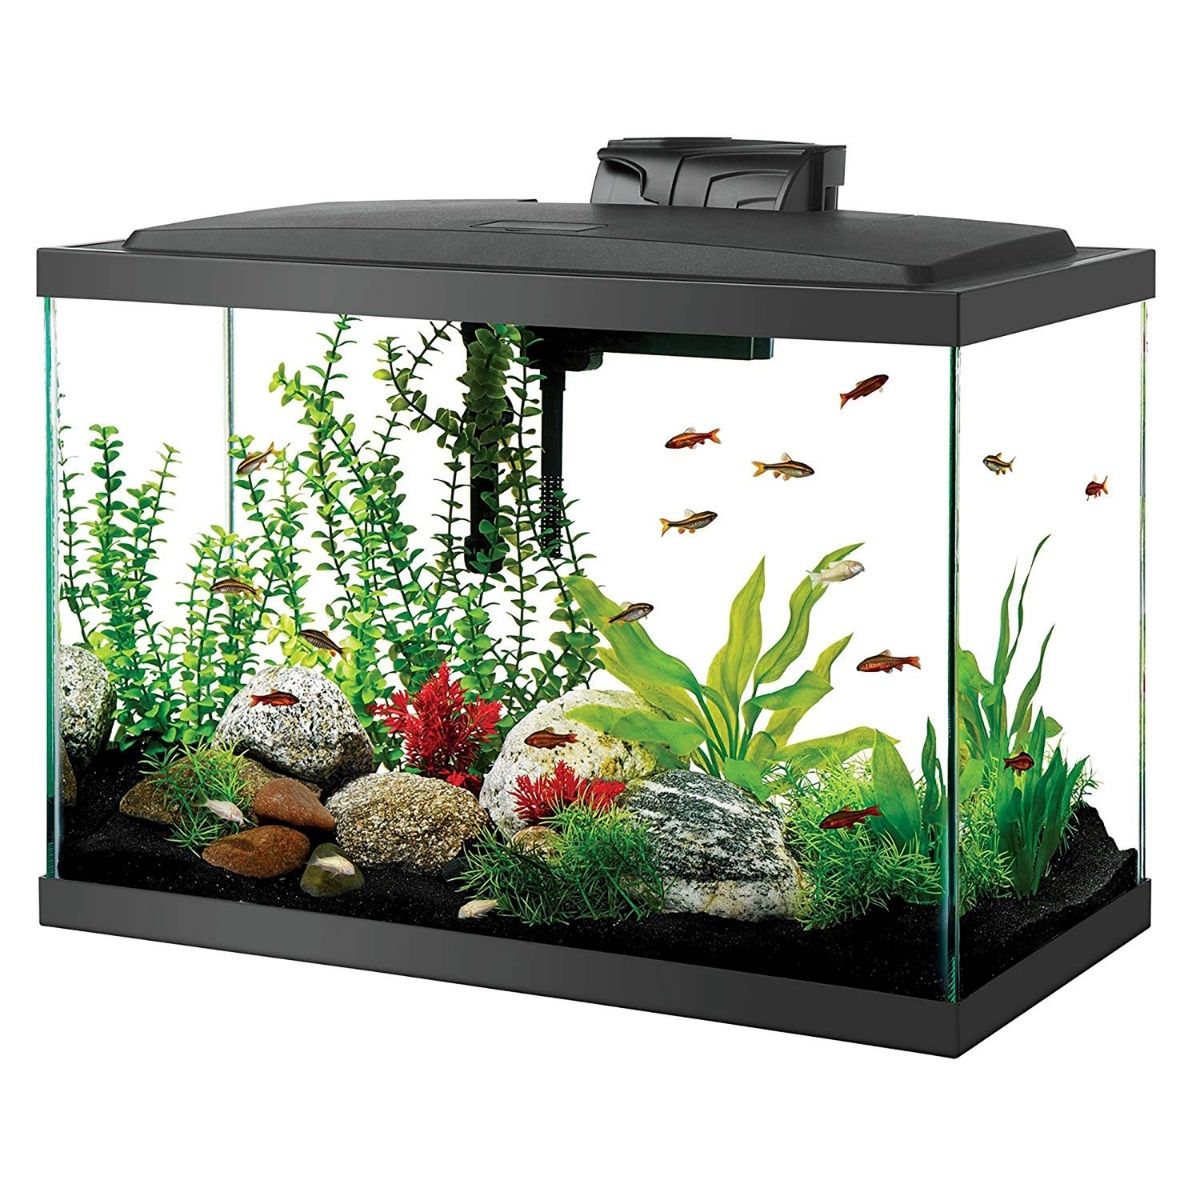 Best 5 Gallon Fish Tank Marina Led Aquarium Kit